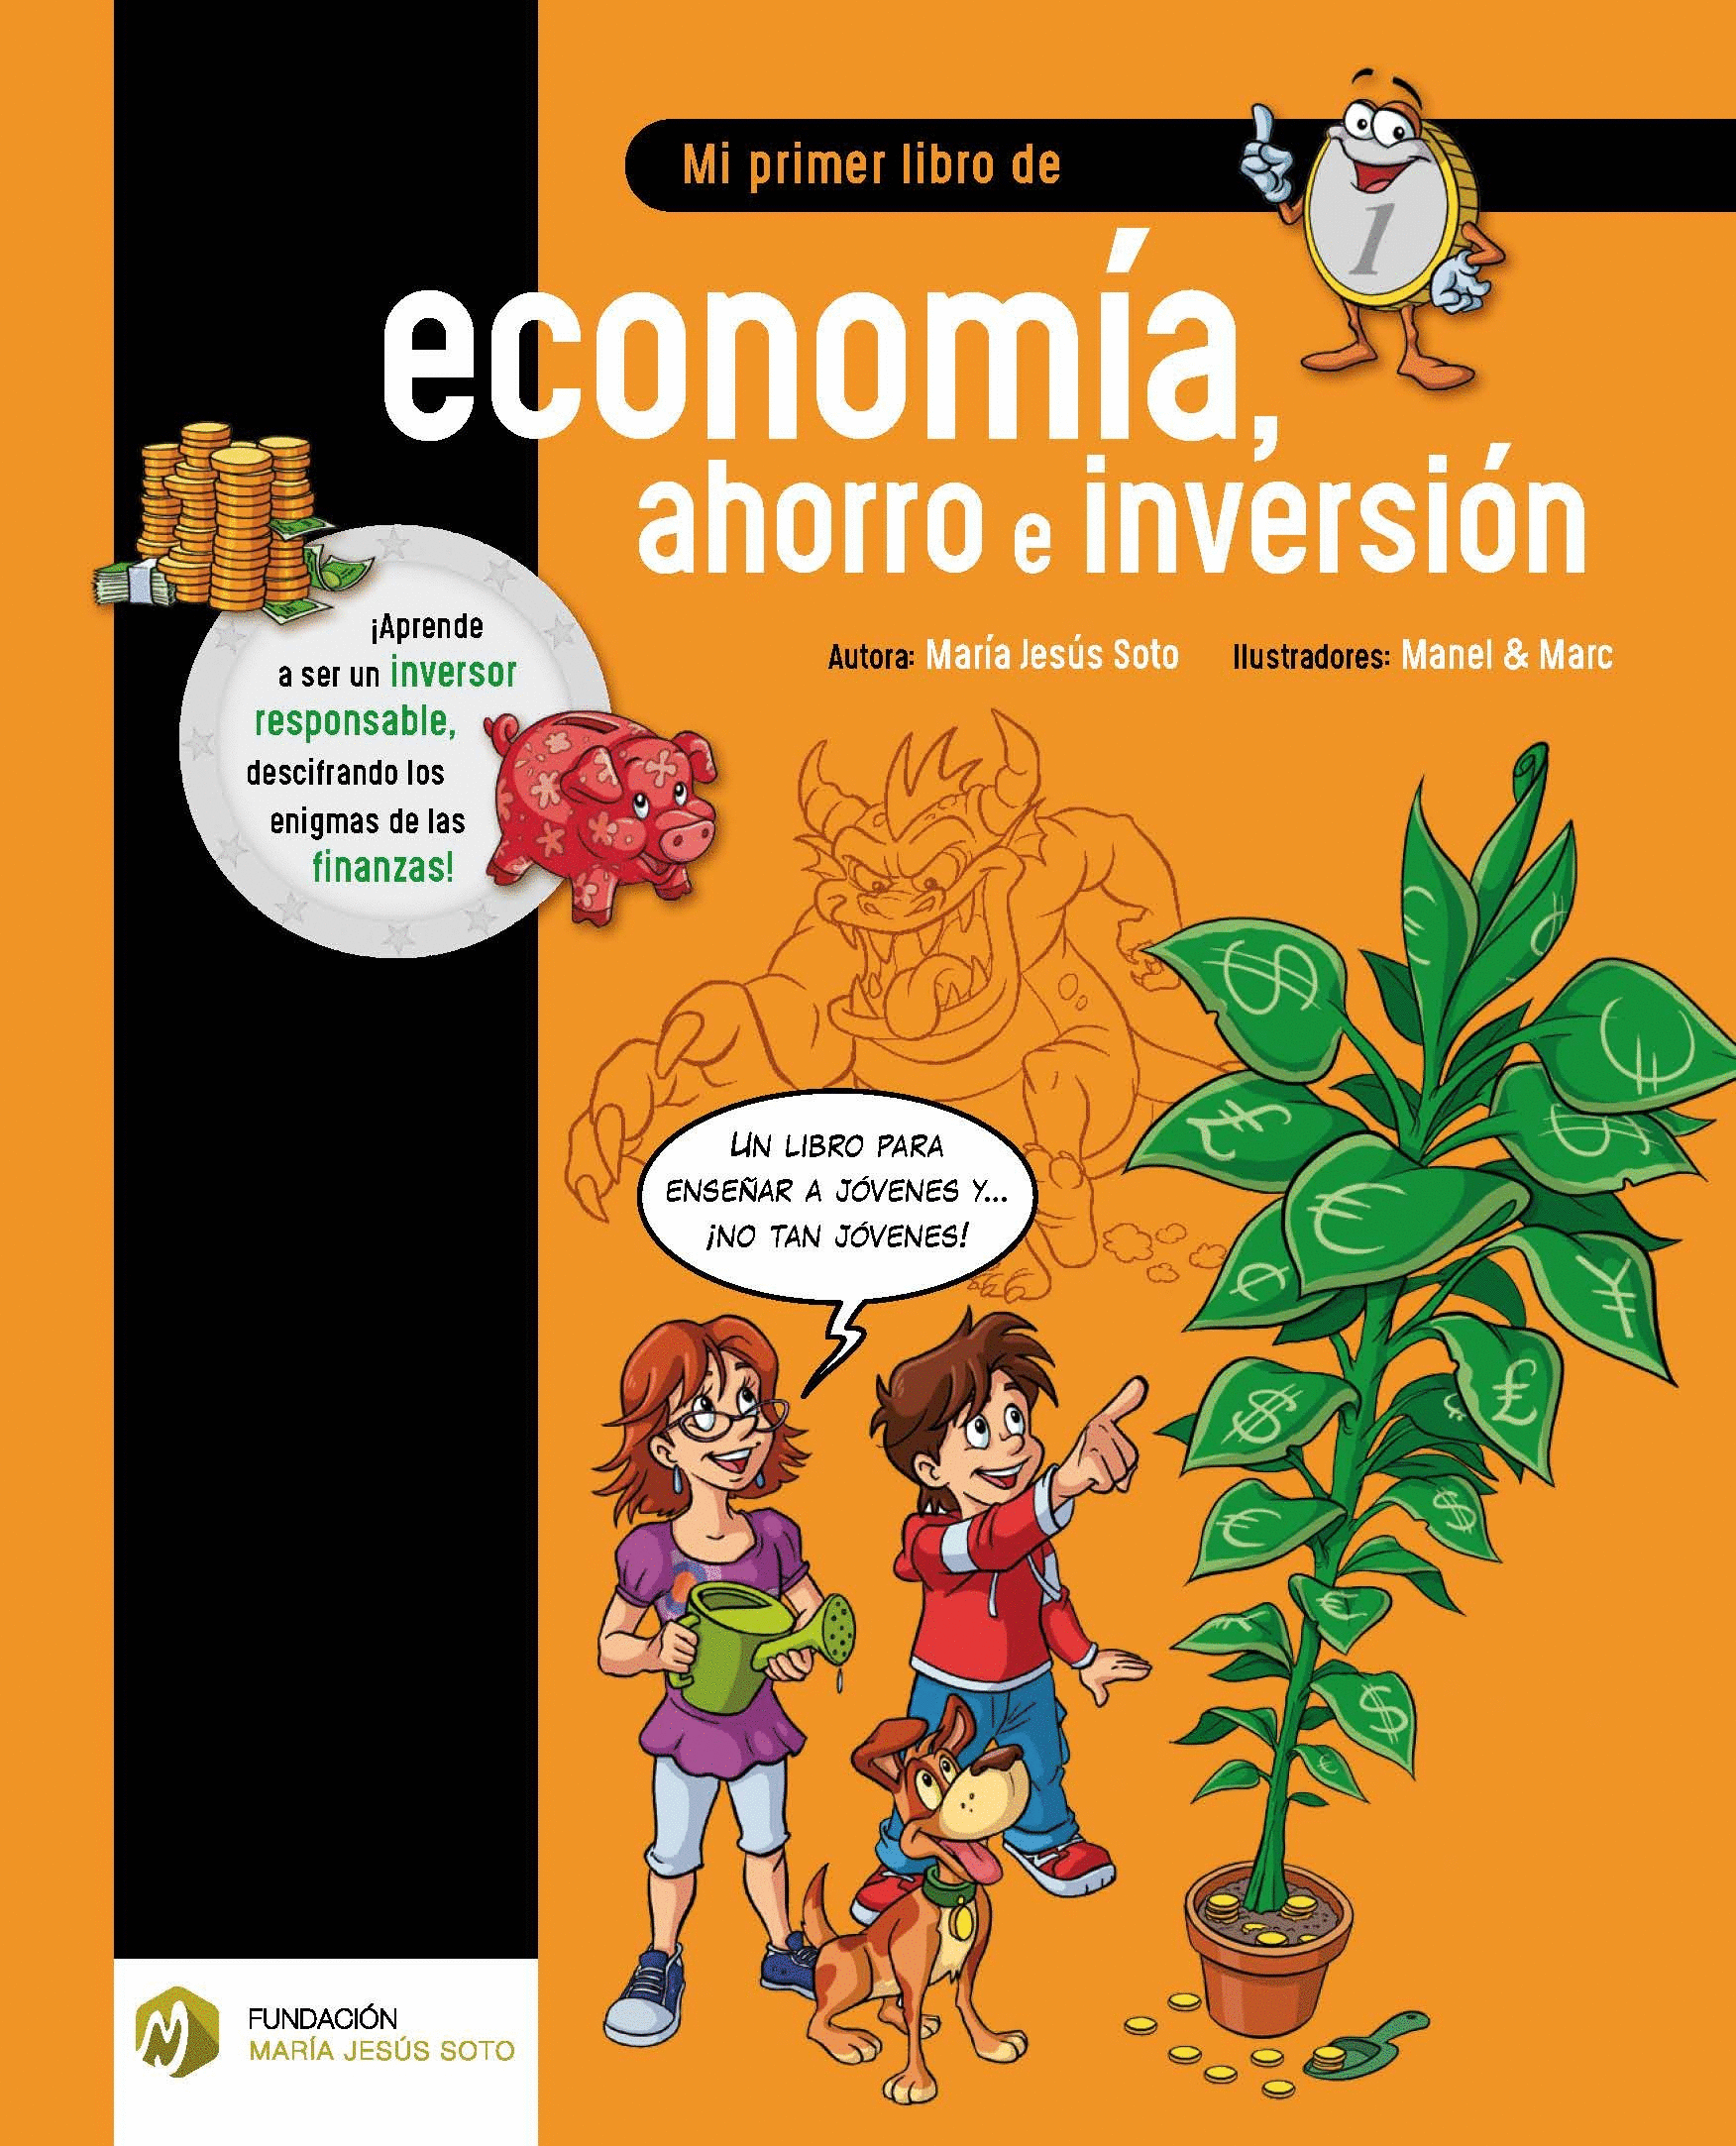 MI PRIMER LIBRO DE ECONOMIA, AHORRO E INVERSION